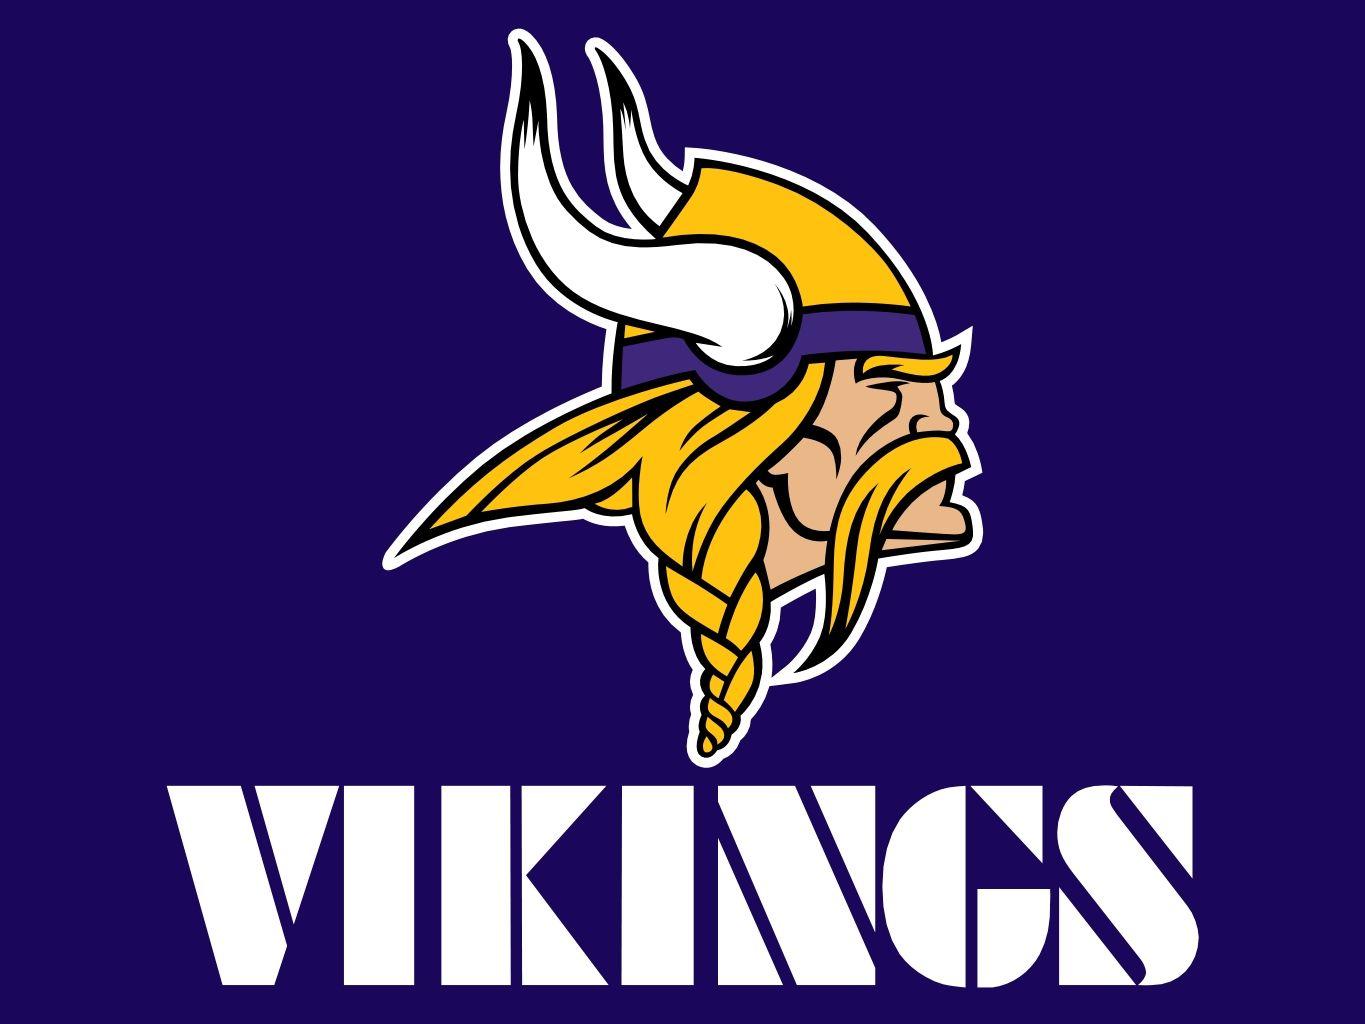 Minnesota Vikings 2014